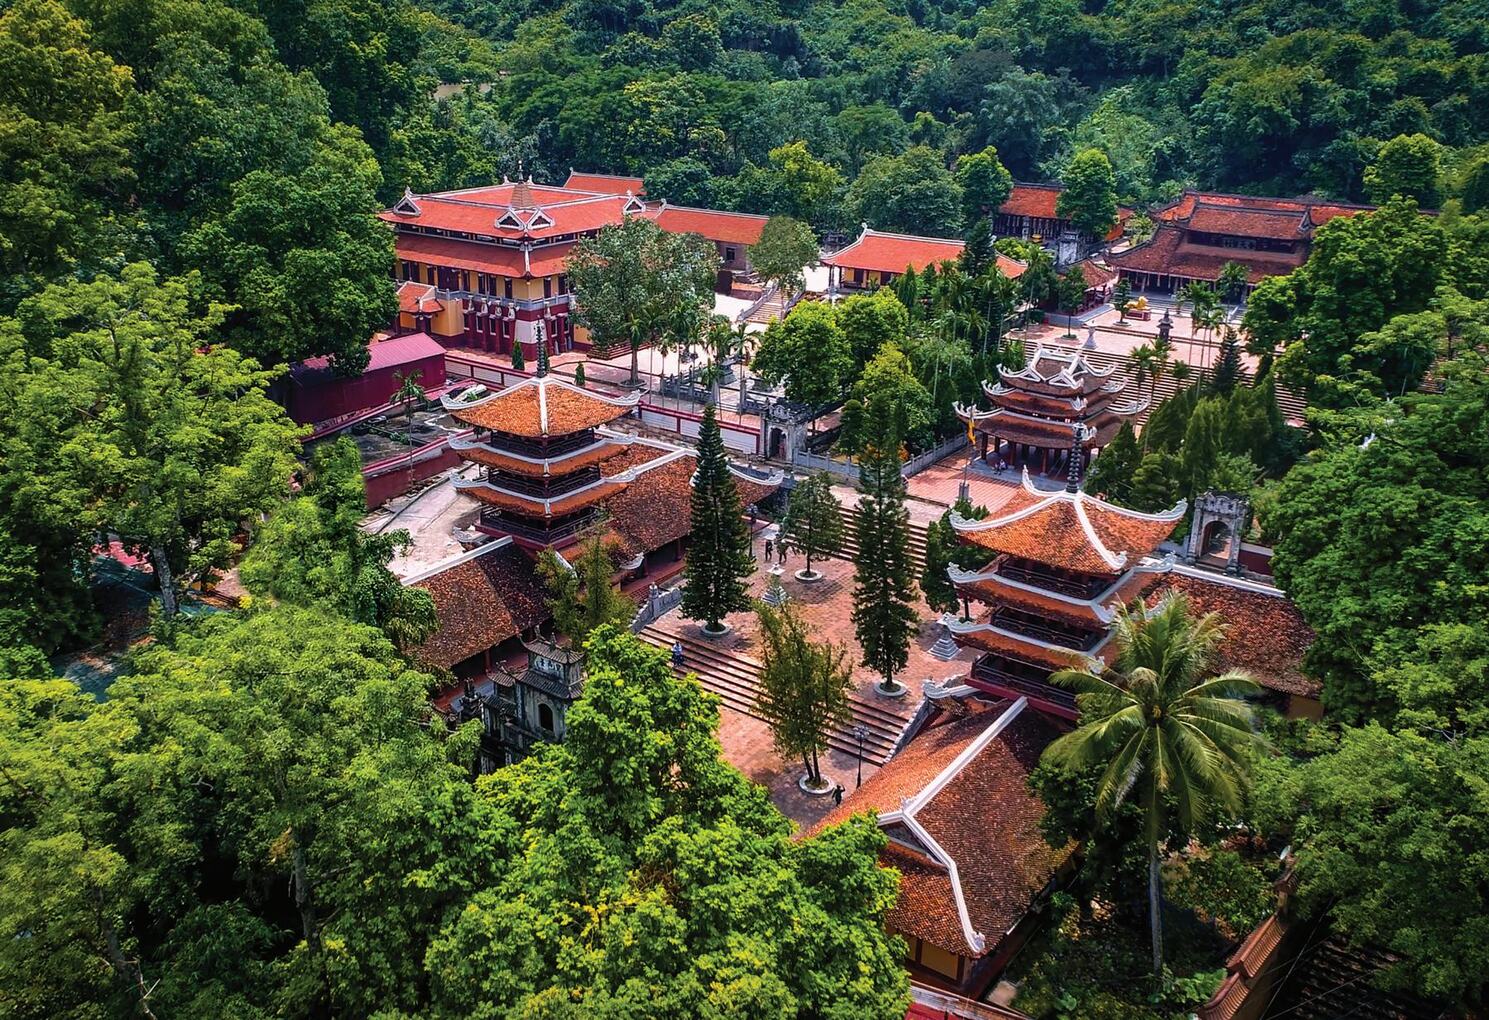 Quần thể chùa Hương nhìn từ trên cao.